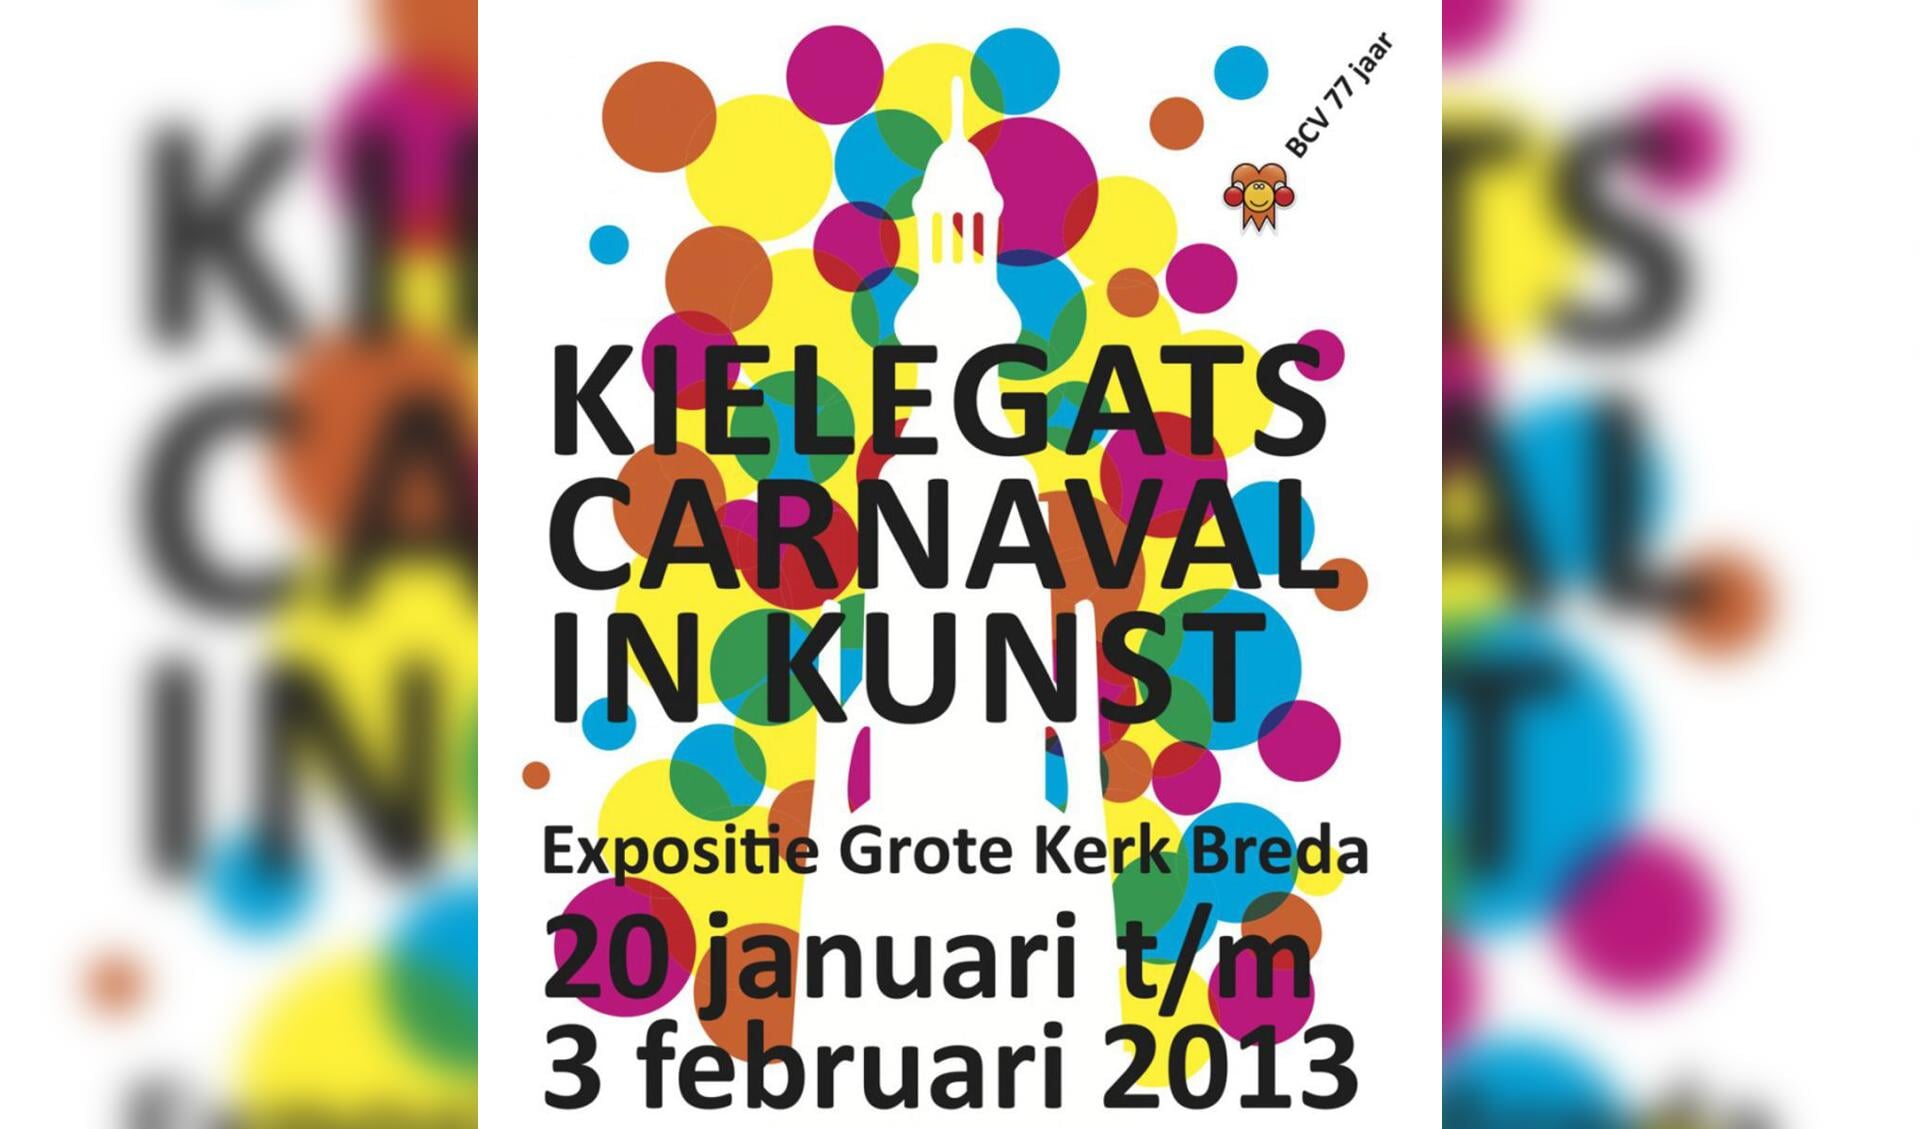 Poster voor de expositie Kielegats carnaval in Kunst.